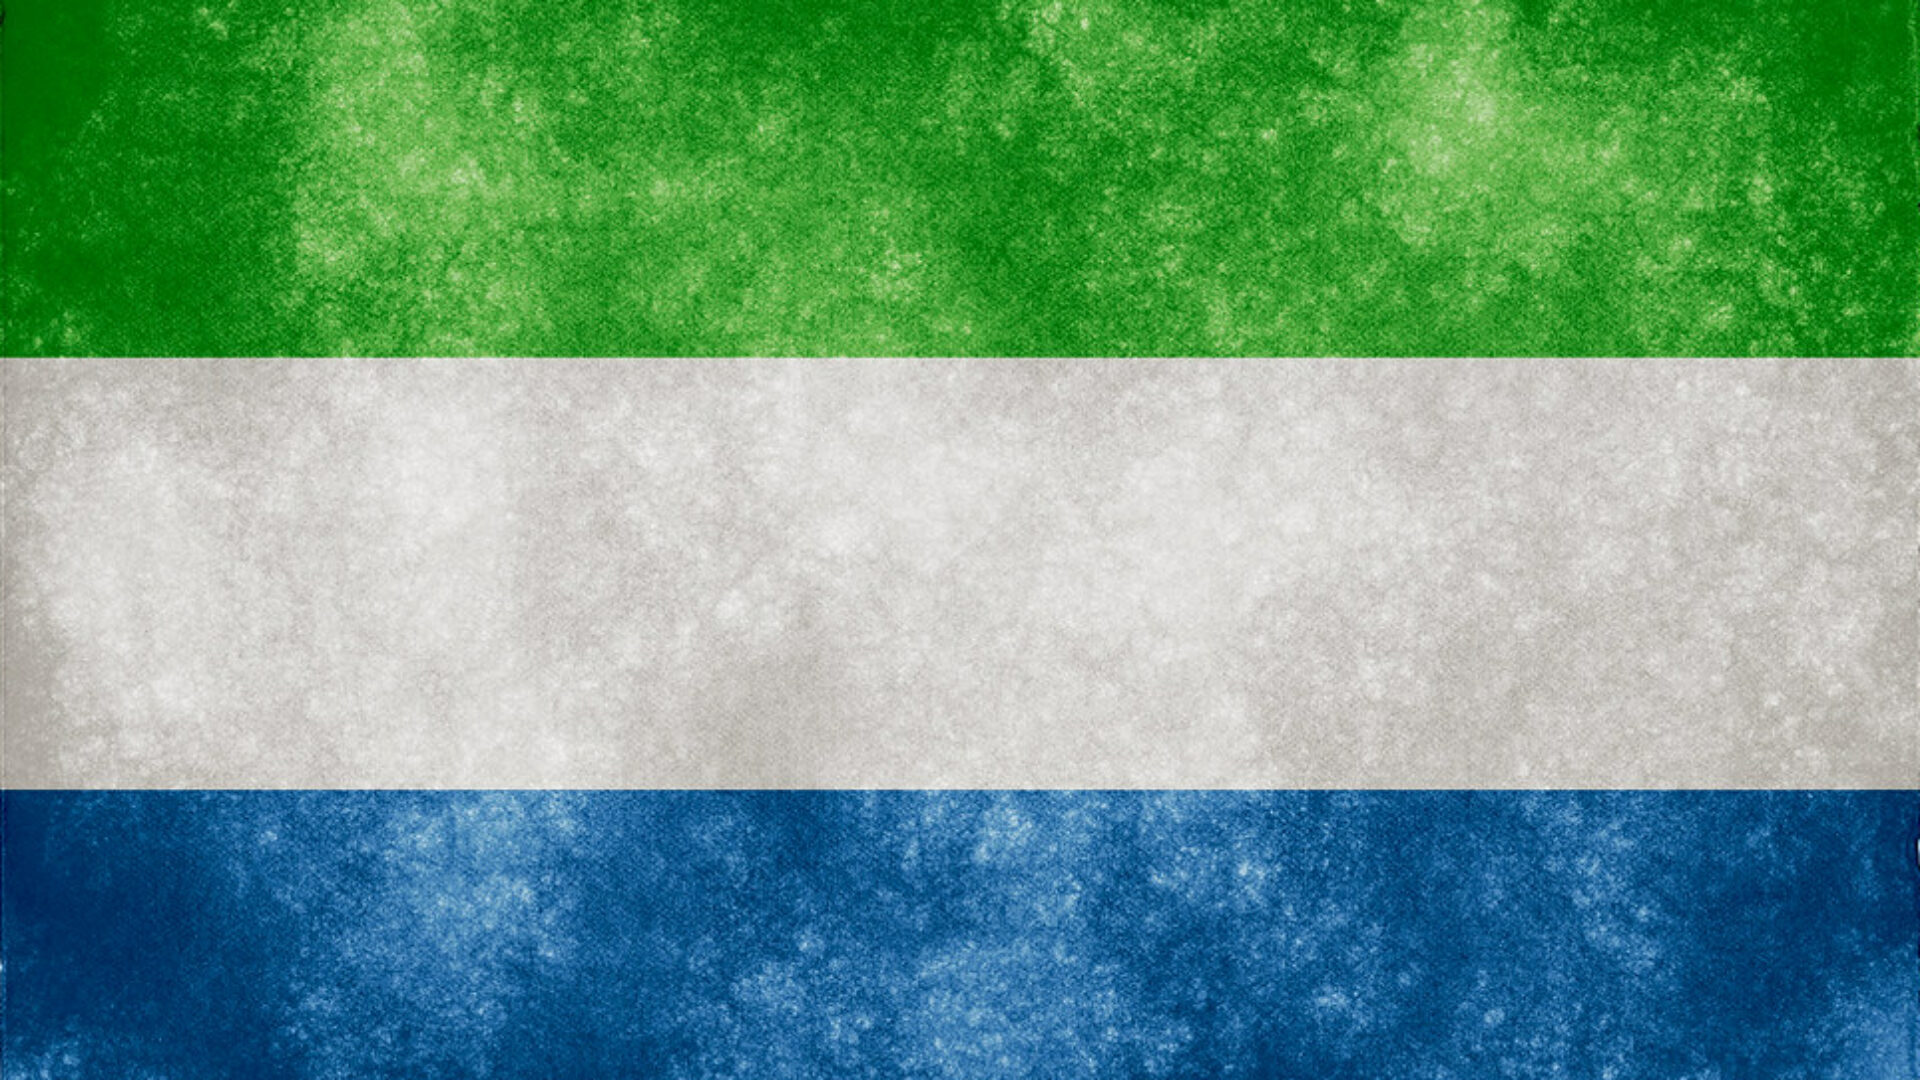 The Sierra Leone flag